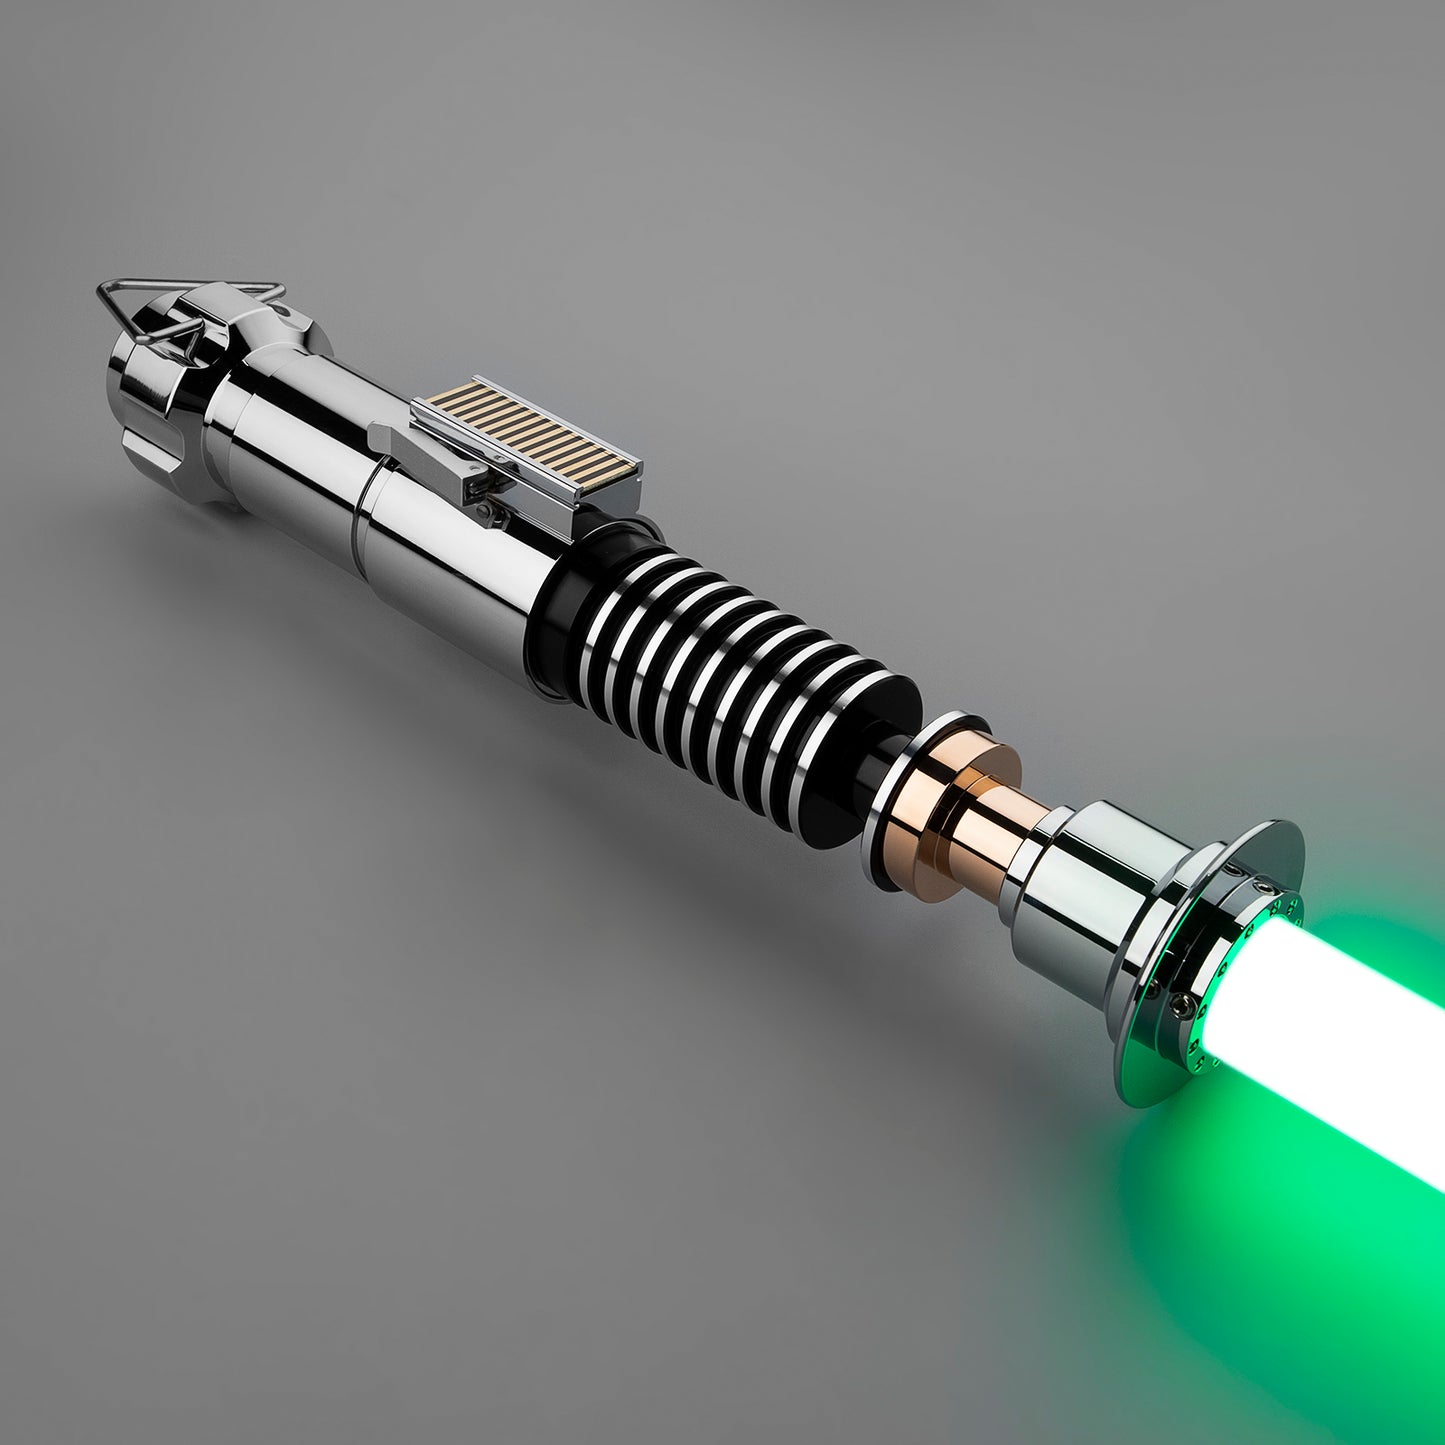 The V2: Luke Skywalker's Lightsaber